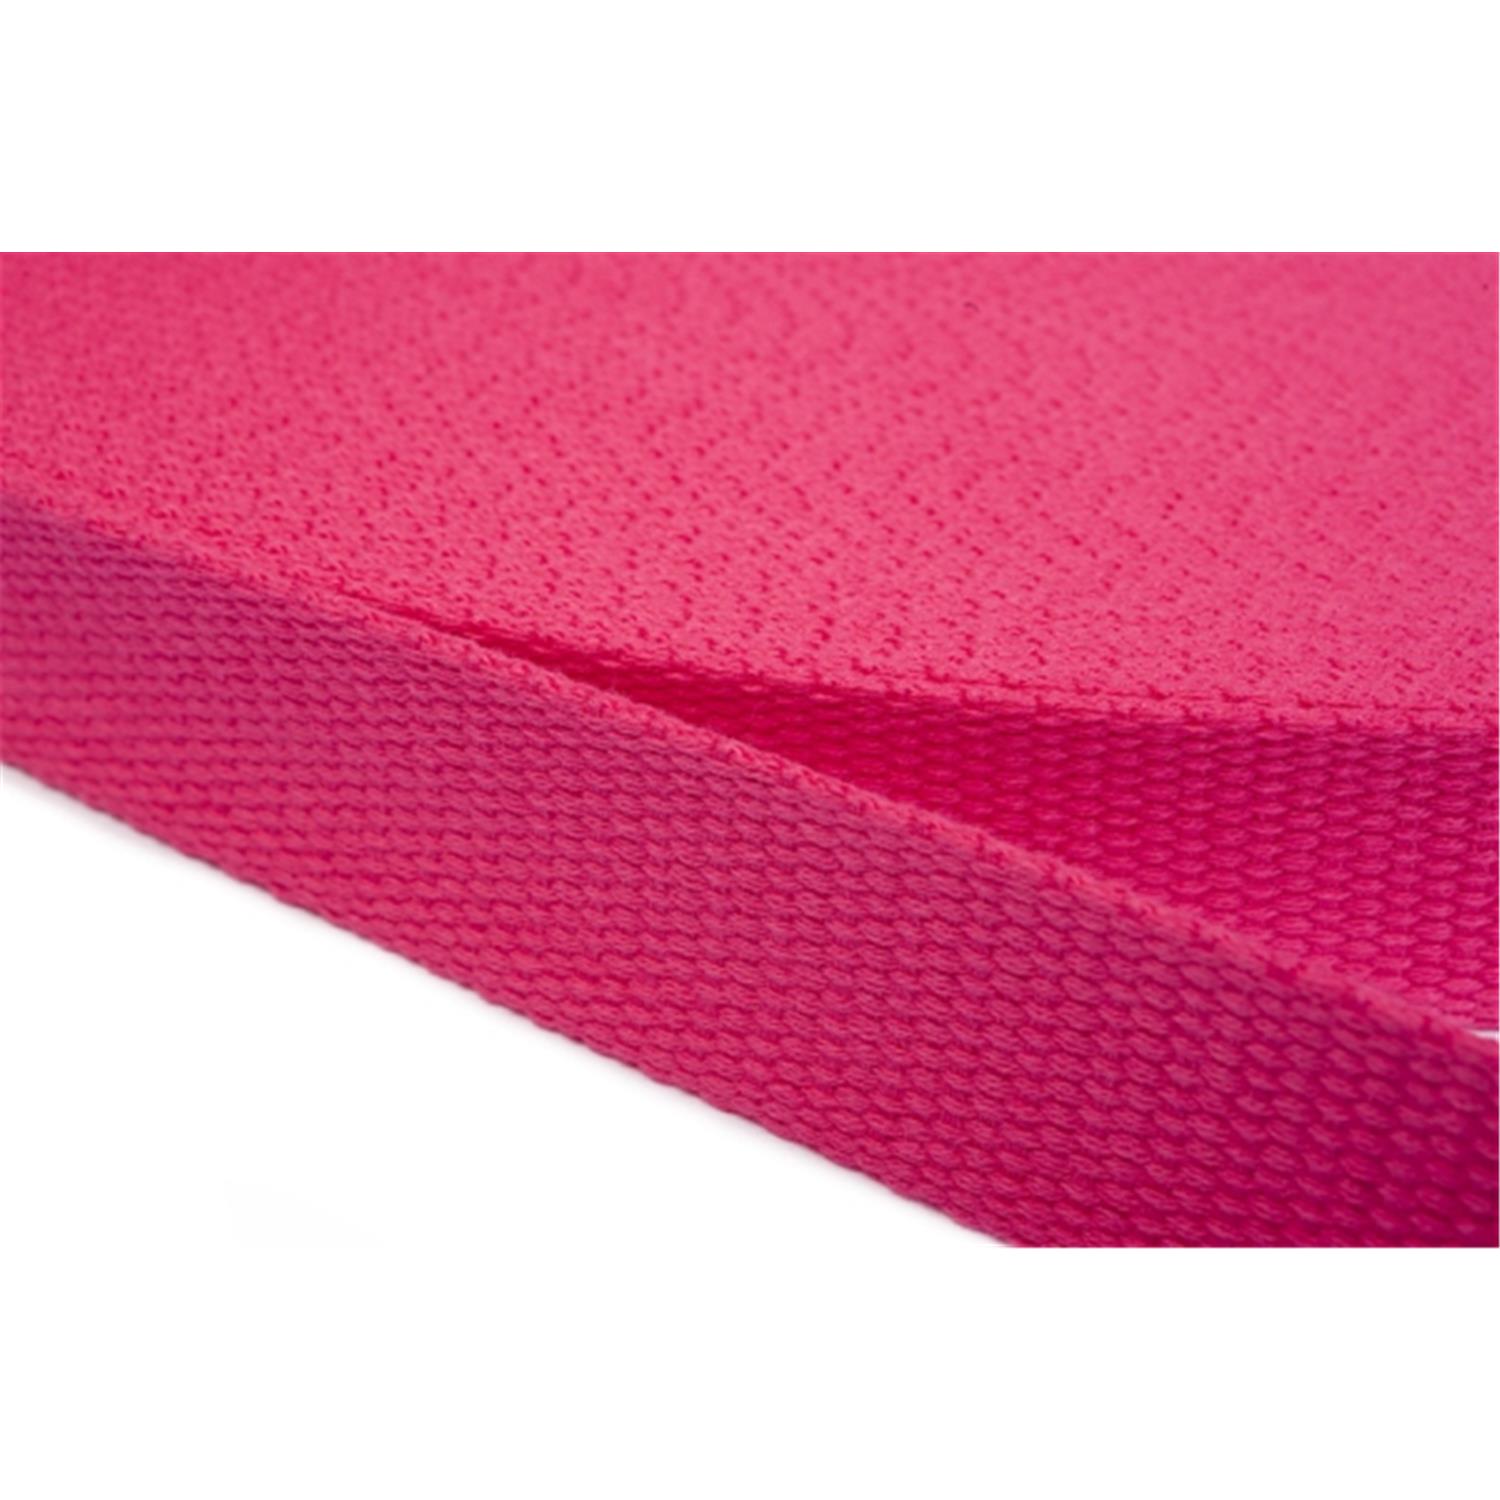 Gurtband aus Baumwolle 20mm in 20 Farben 07 - rosa/pink 6 Meter